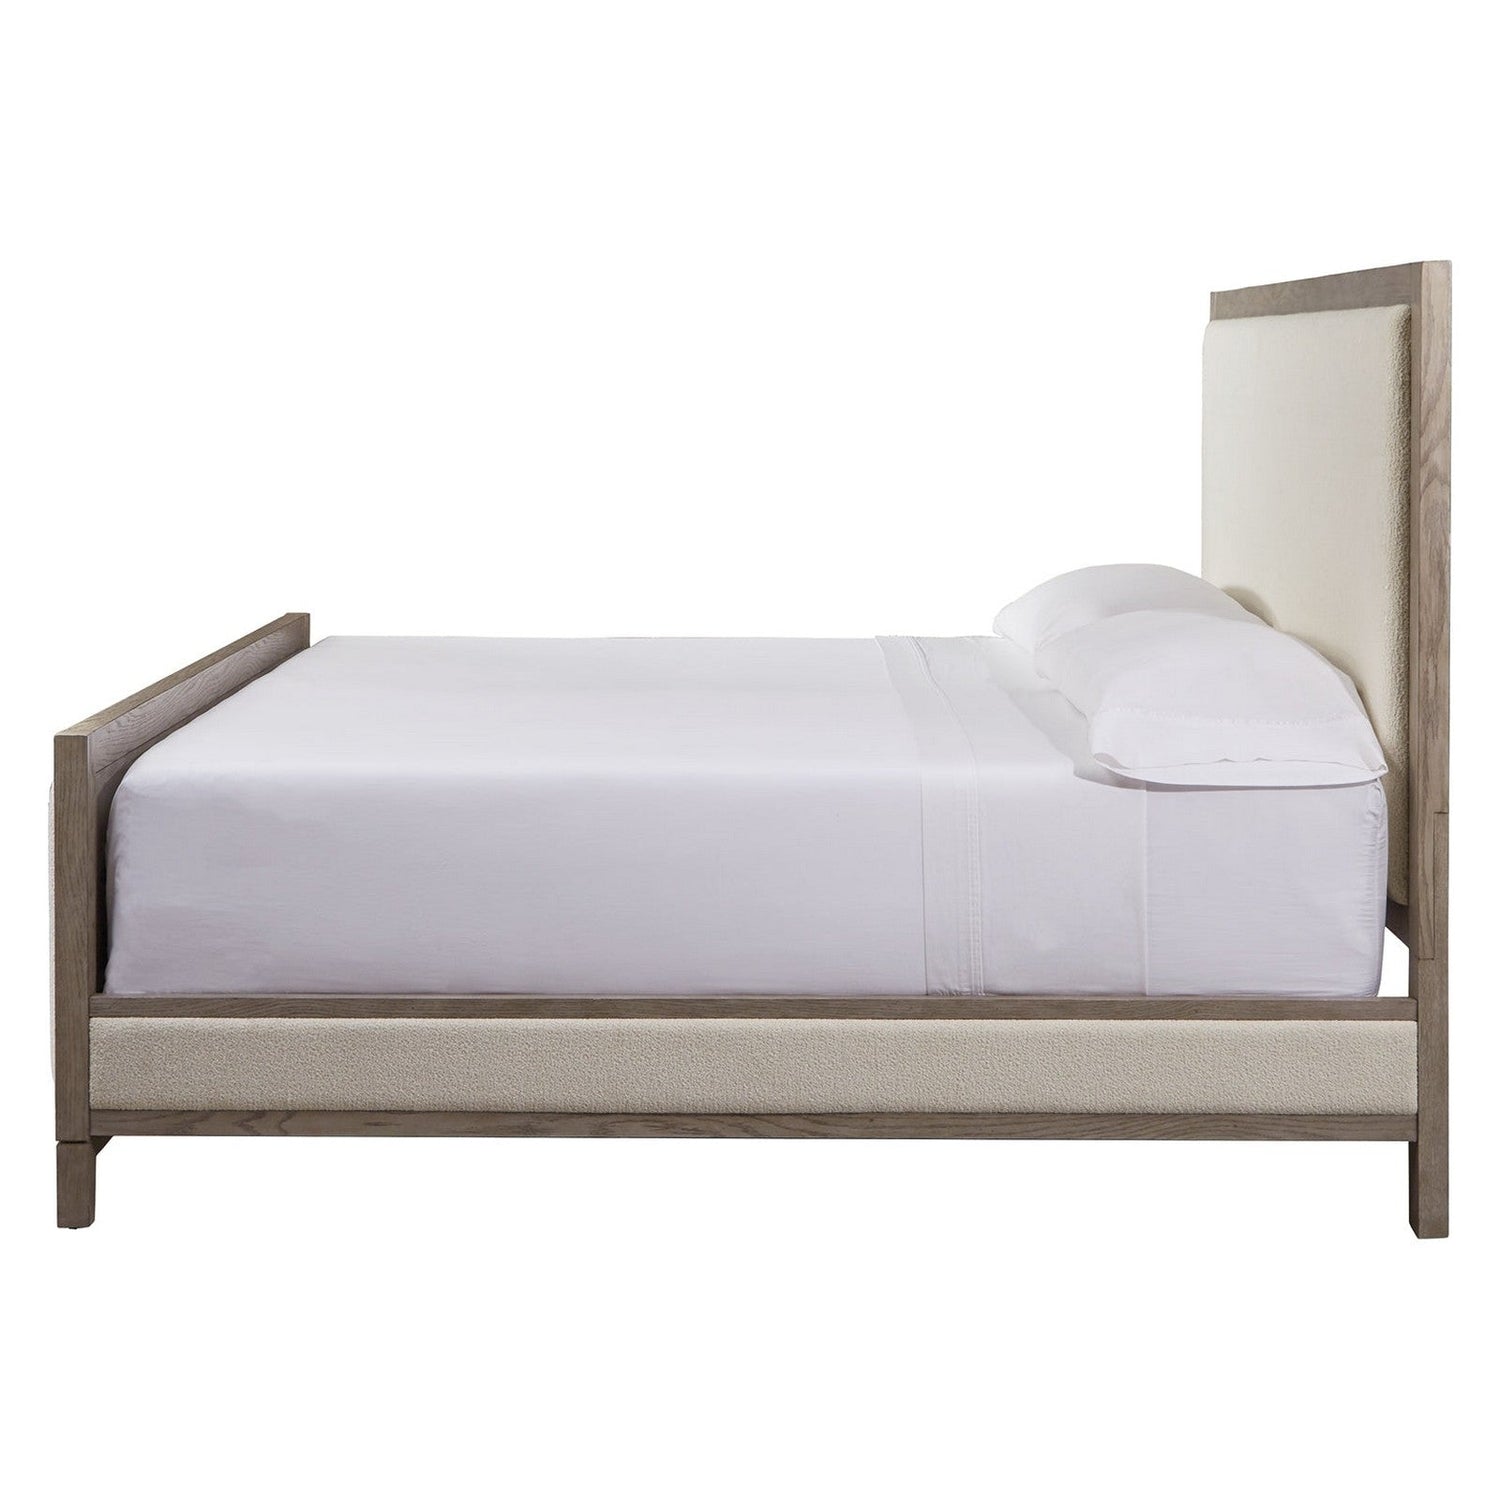 Chrestner Upholstered Panel Bed